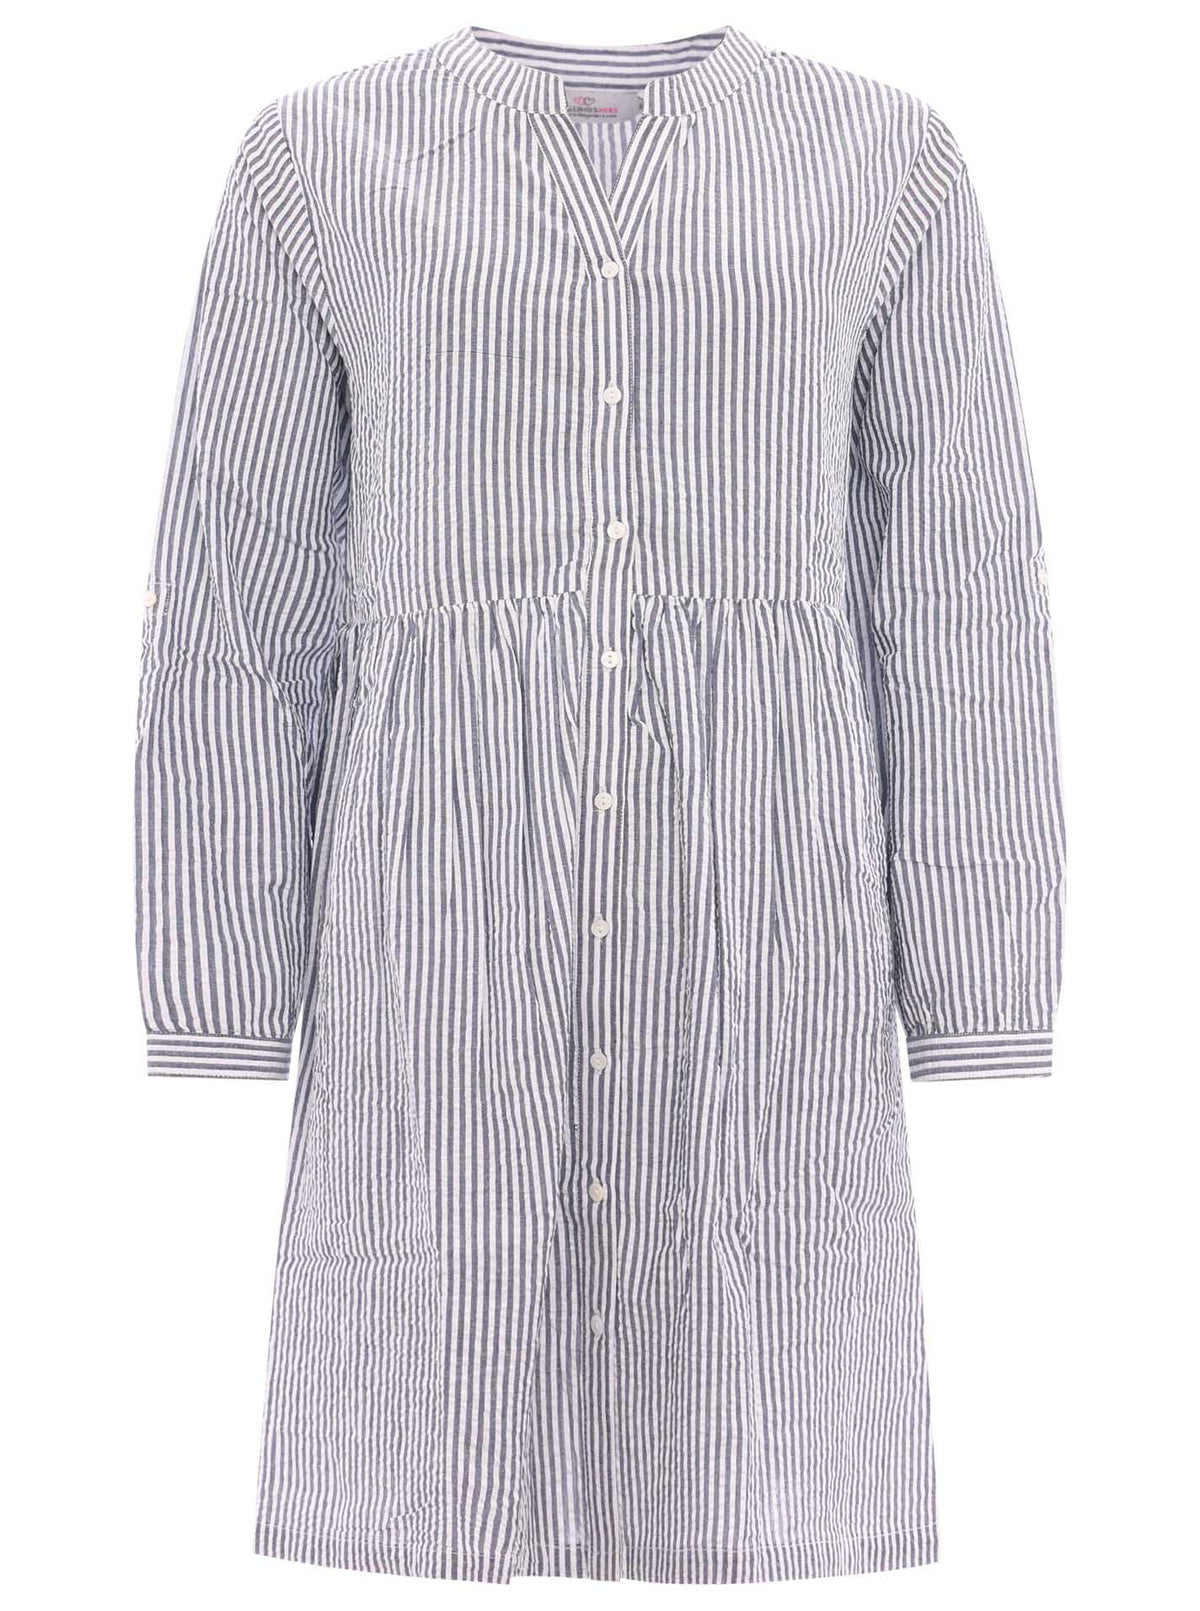 Zwillingsherz - Baumwoll Kleid / Tunika (Streifen) - Blau/Weiß